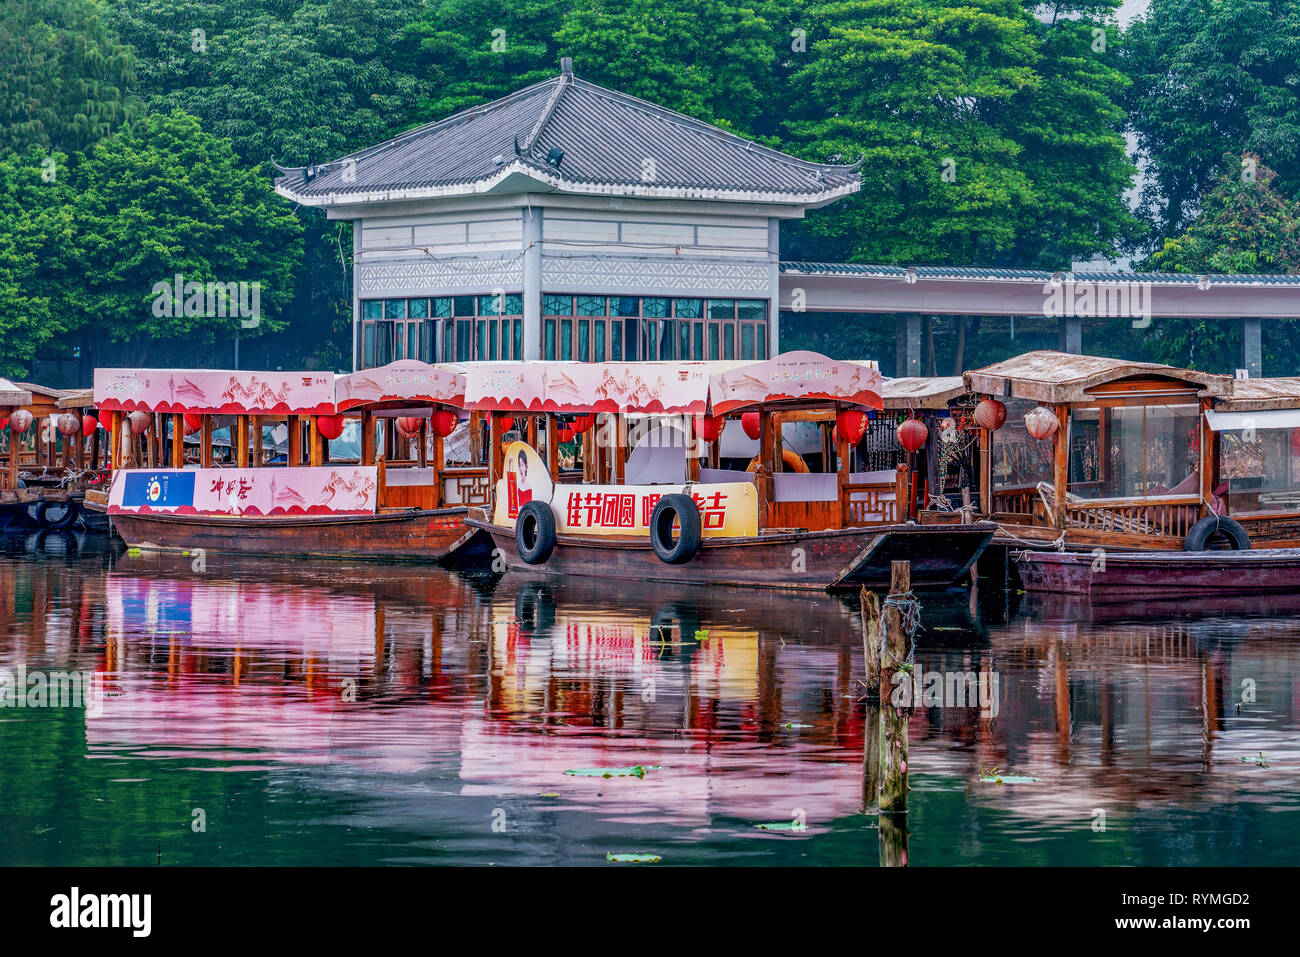 GUANGZHOU, CHINA - 20 de octubre: Ver barcos tradicionales chinos Liwan Lake Park, un parque famoso y popular destino turístico en Octubre 20, 2018 en Foto de stock